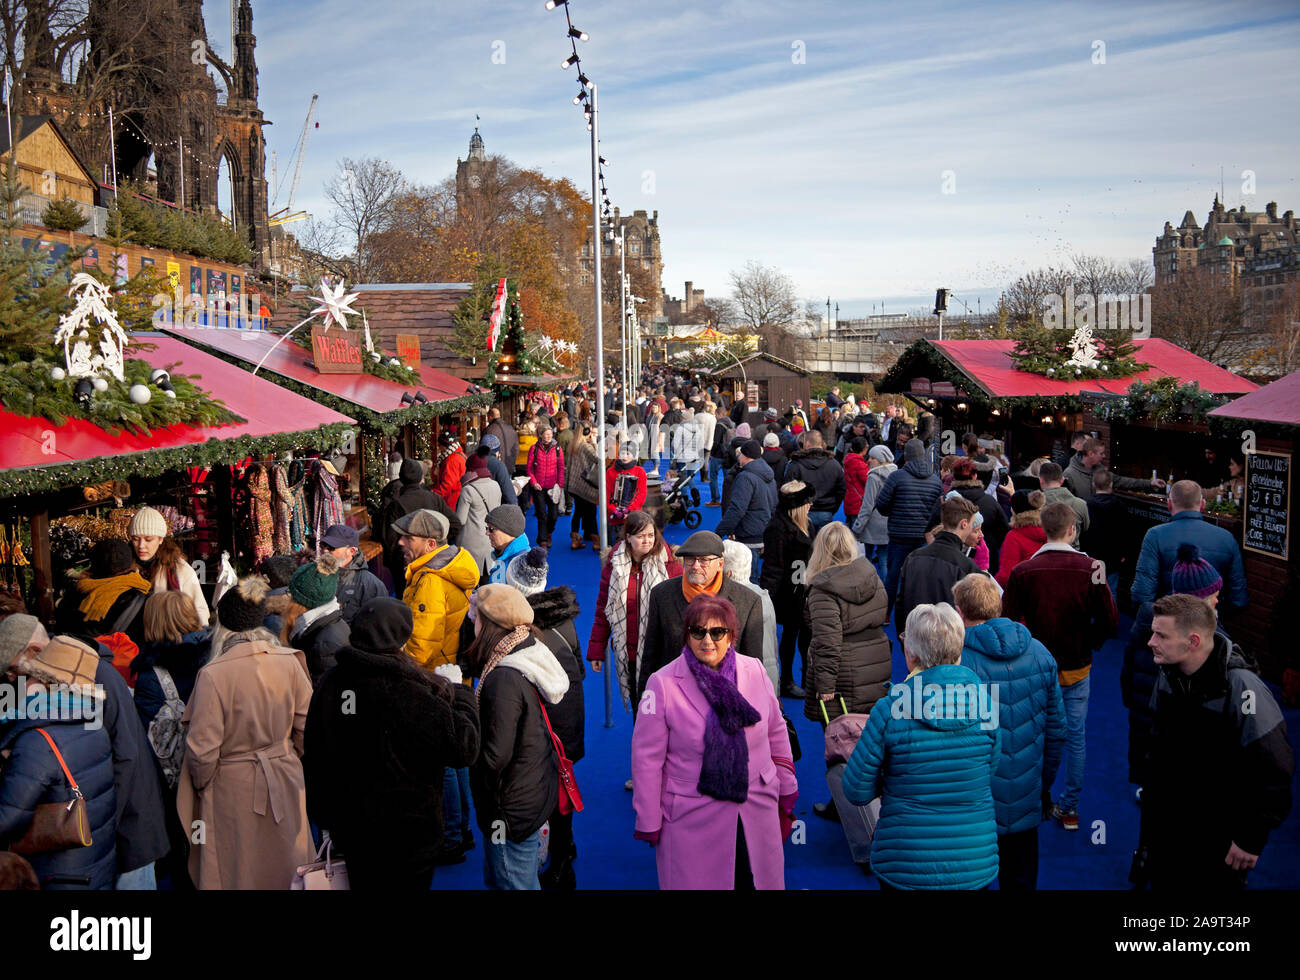 Edimburgo, Escocia, Reino Unido. El 17 de noviembre de 2019. Un ajetreado primer día completo en los jardines de Princes Street Mercado de Navidad, cuando el sol brilló durante todo el día, animando a las multitudes. Foto de stock